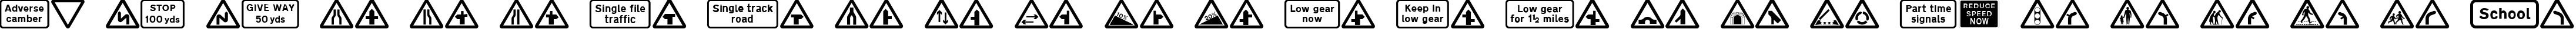 Пример написания английского алфавита шрифтом Road Caution Signs UK Part 1